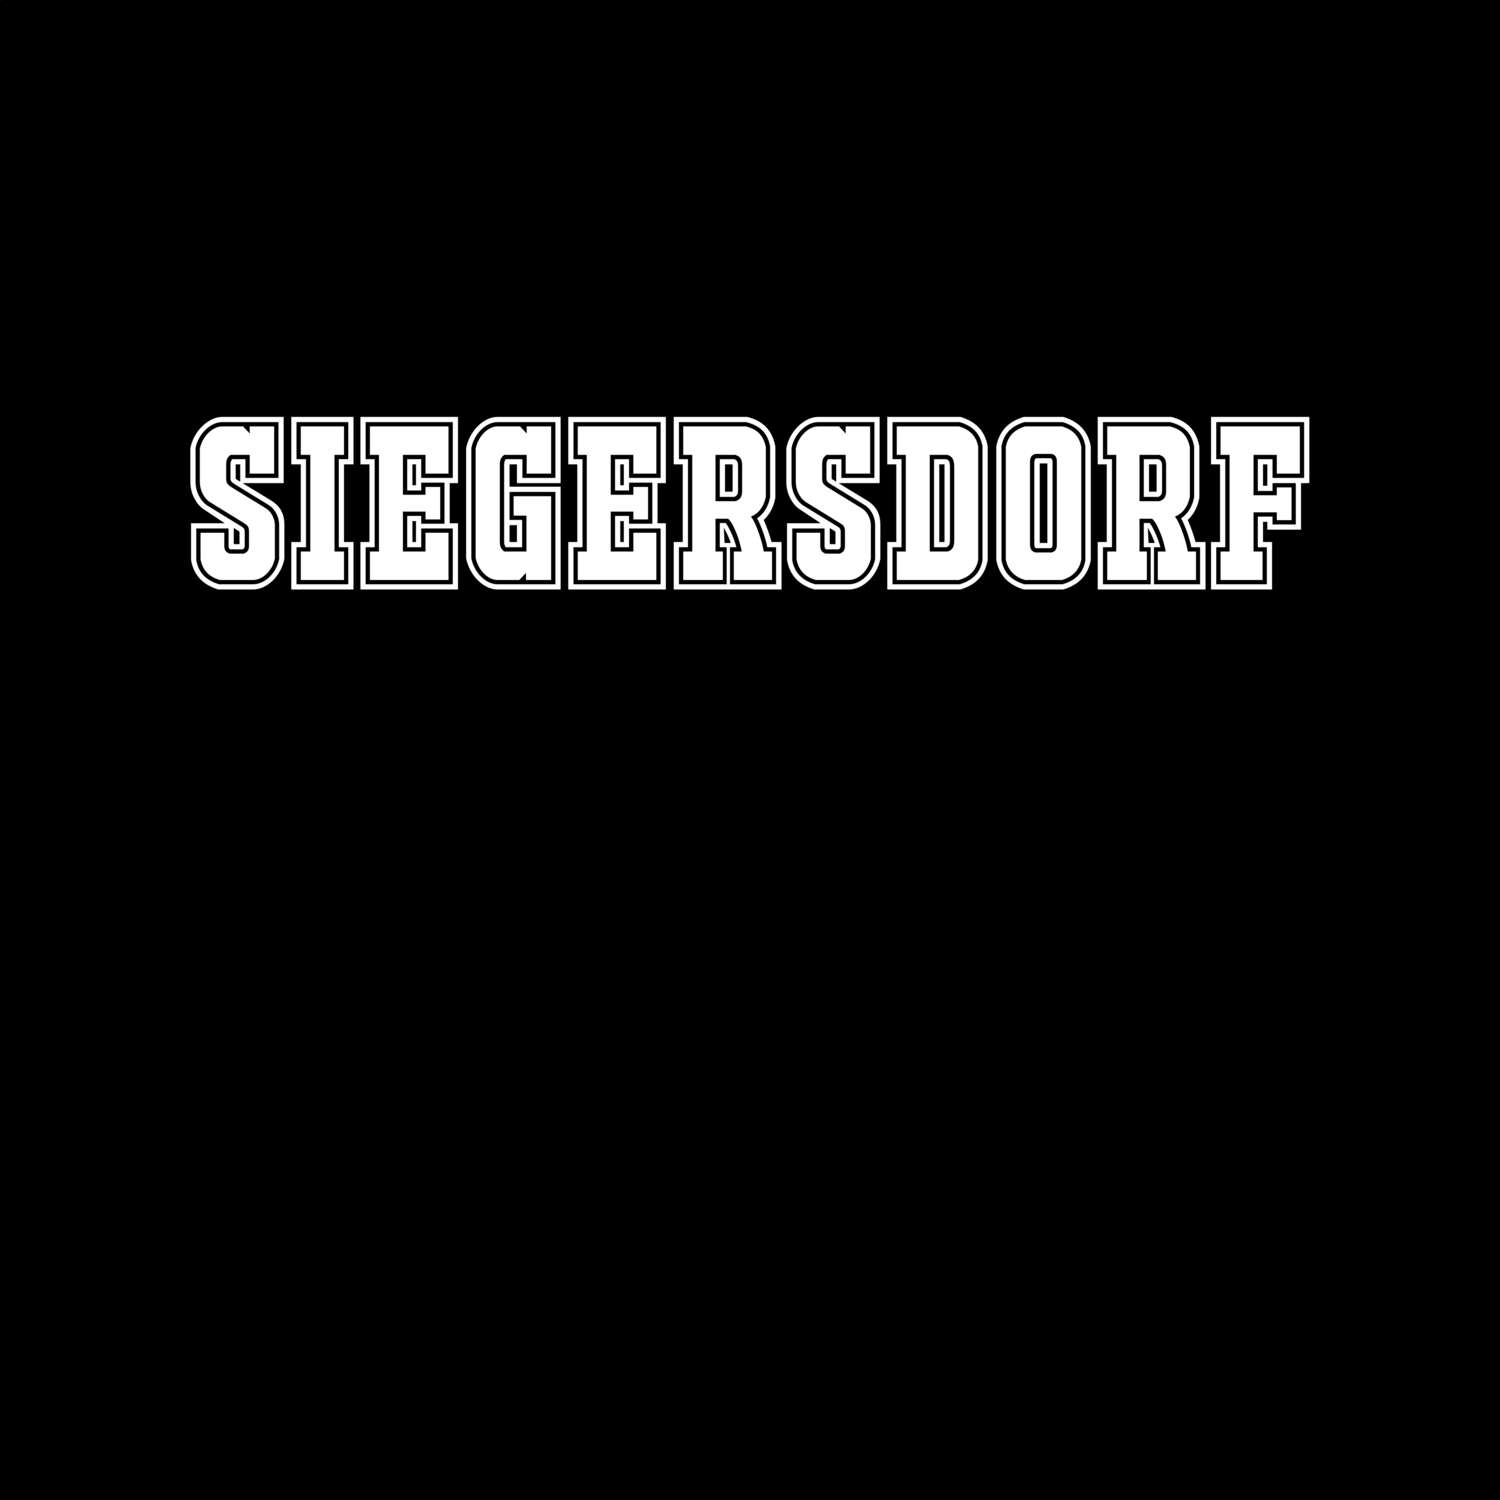 Siegersdorf T-Shirt »Classic«